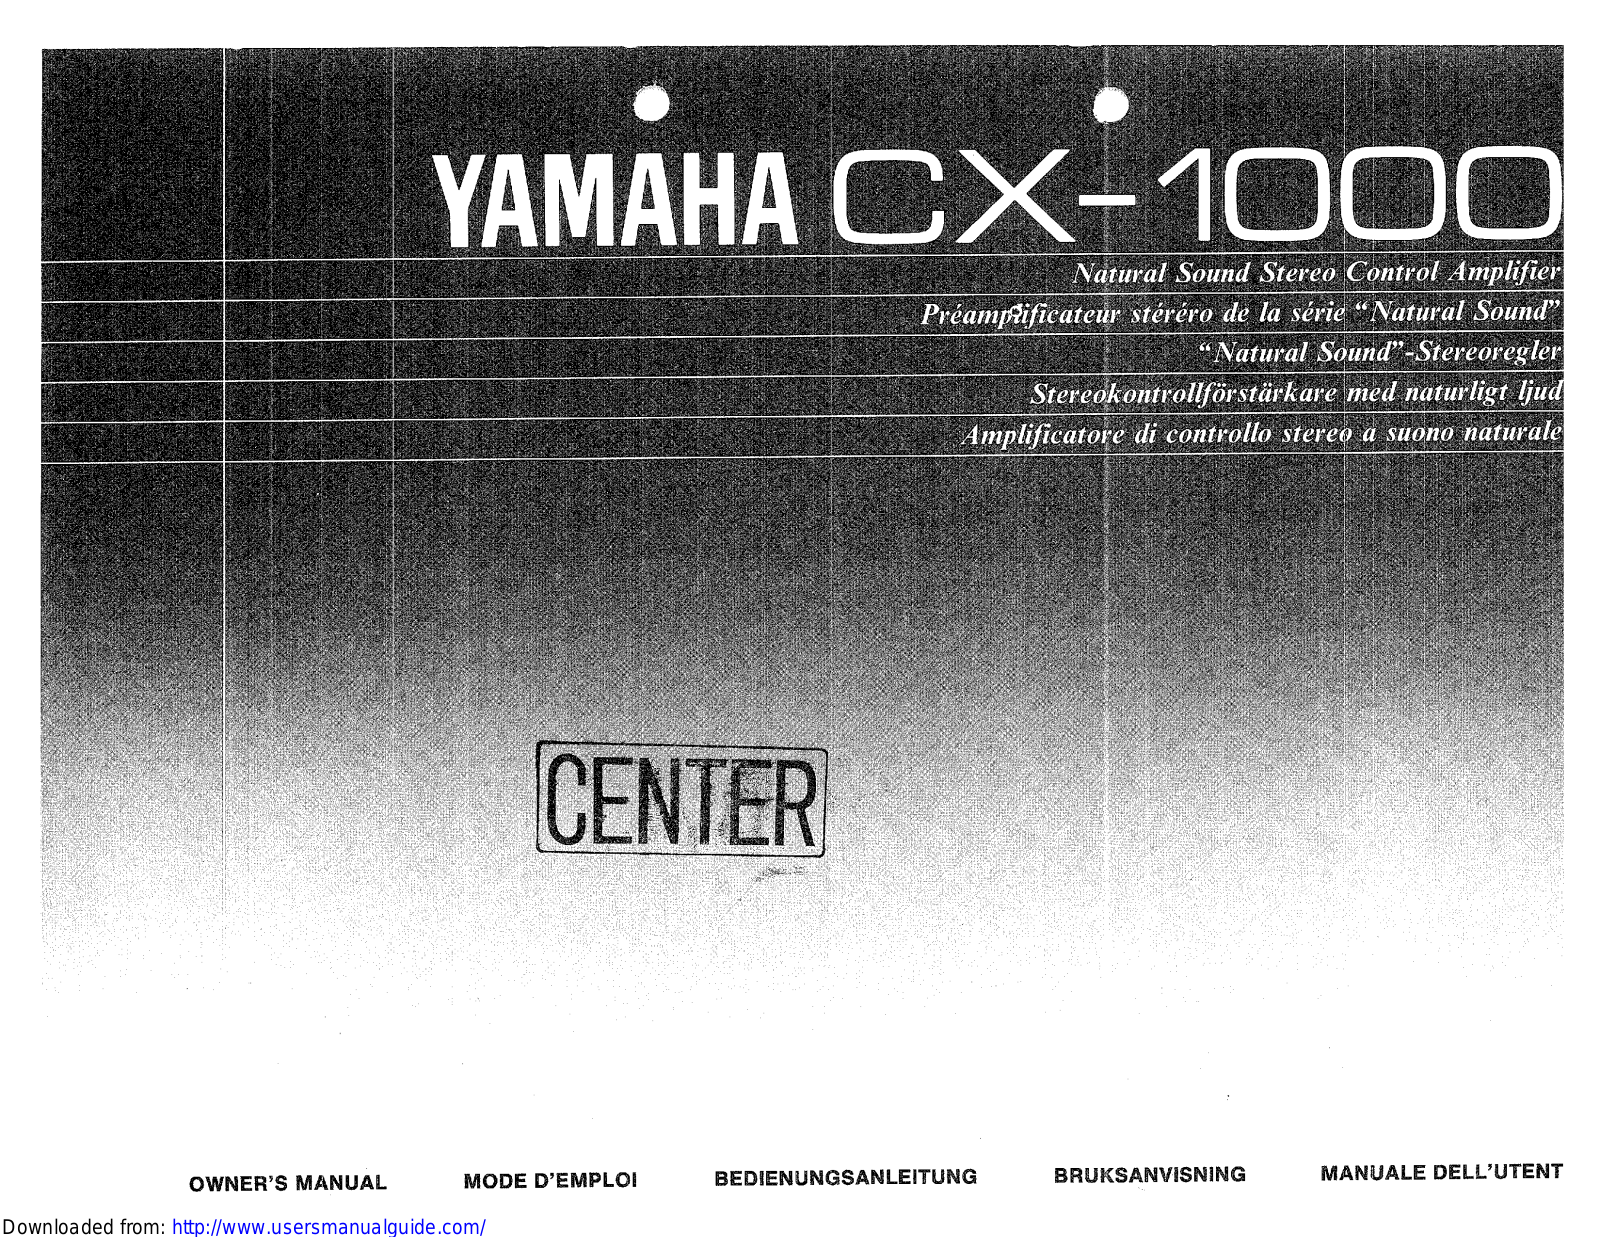 Yamaha Audio CX-1000 User Manual